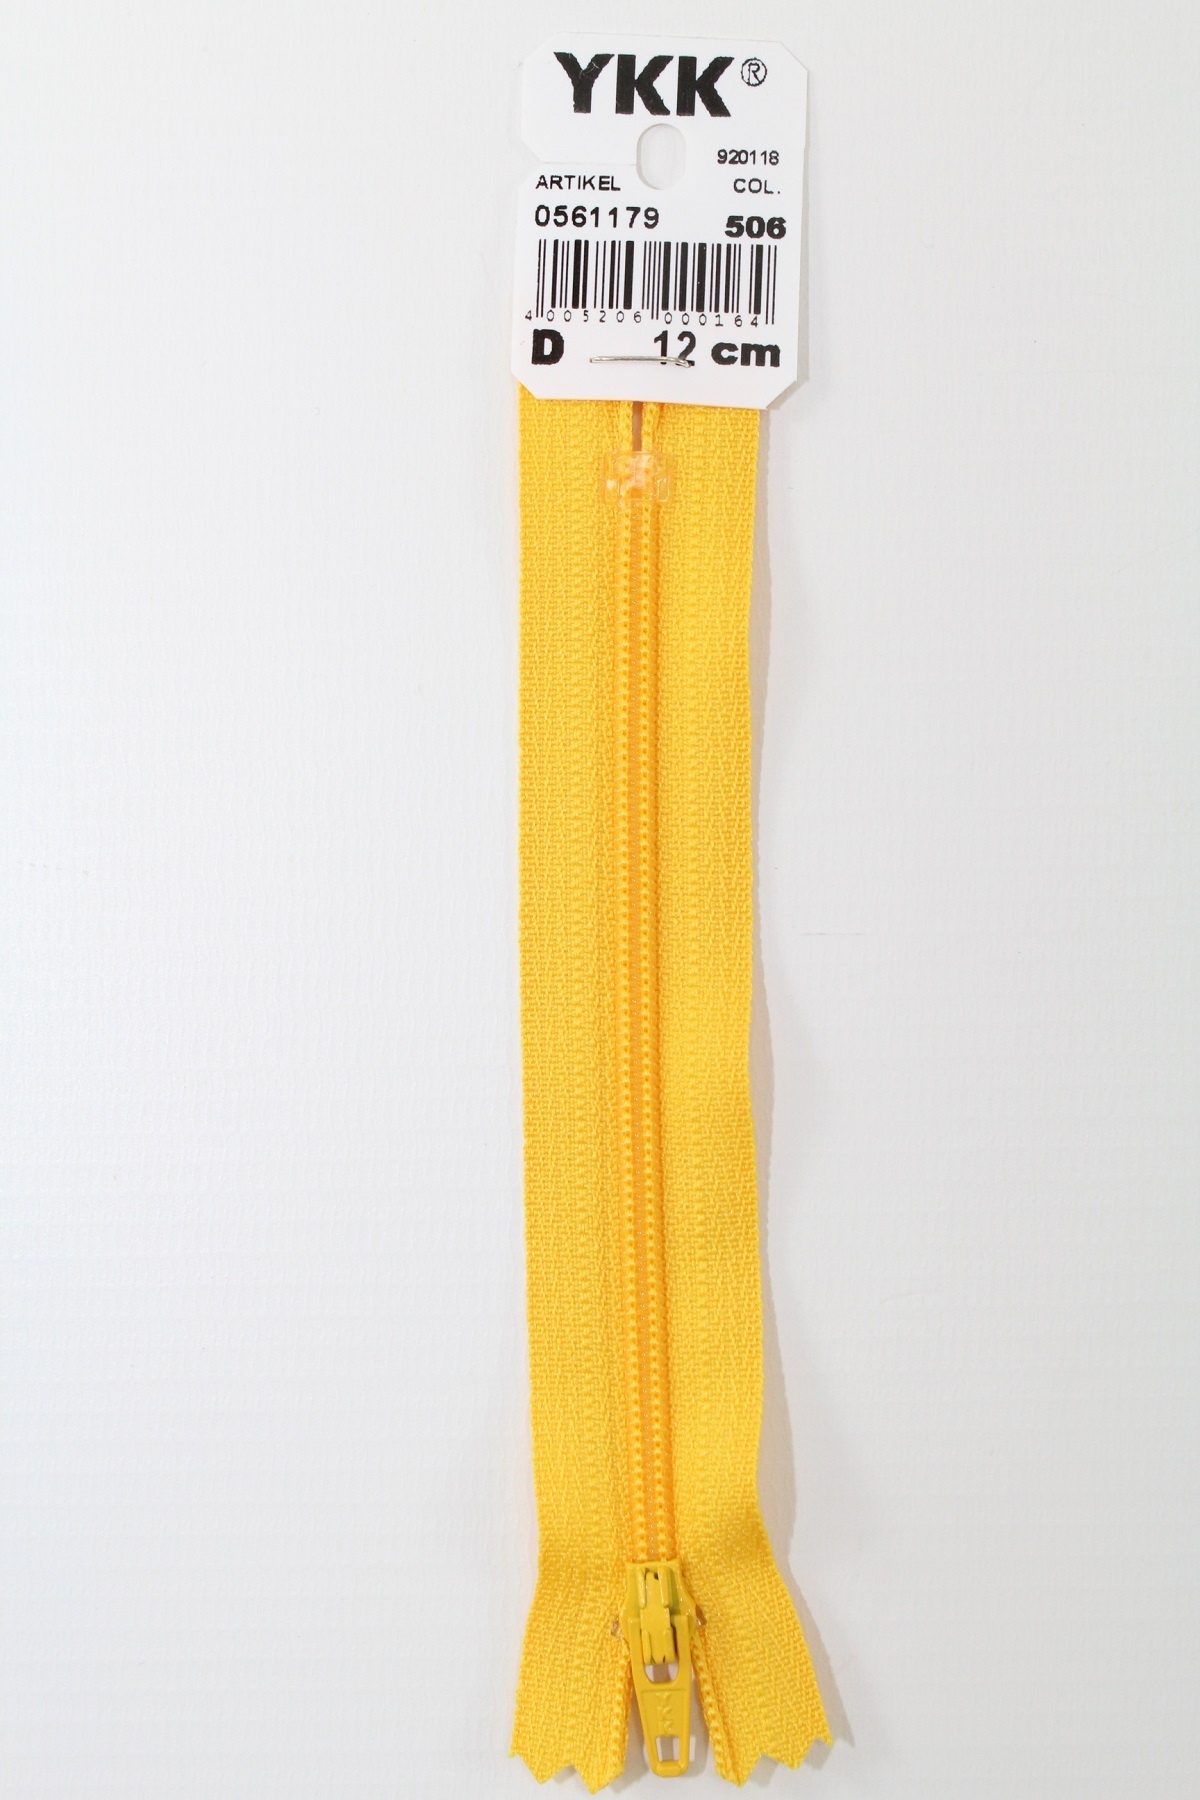 YKK-Reissverschluss 12cm-60cm, nicht teilbar, maisgelb